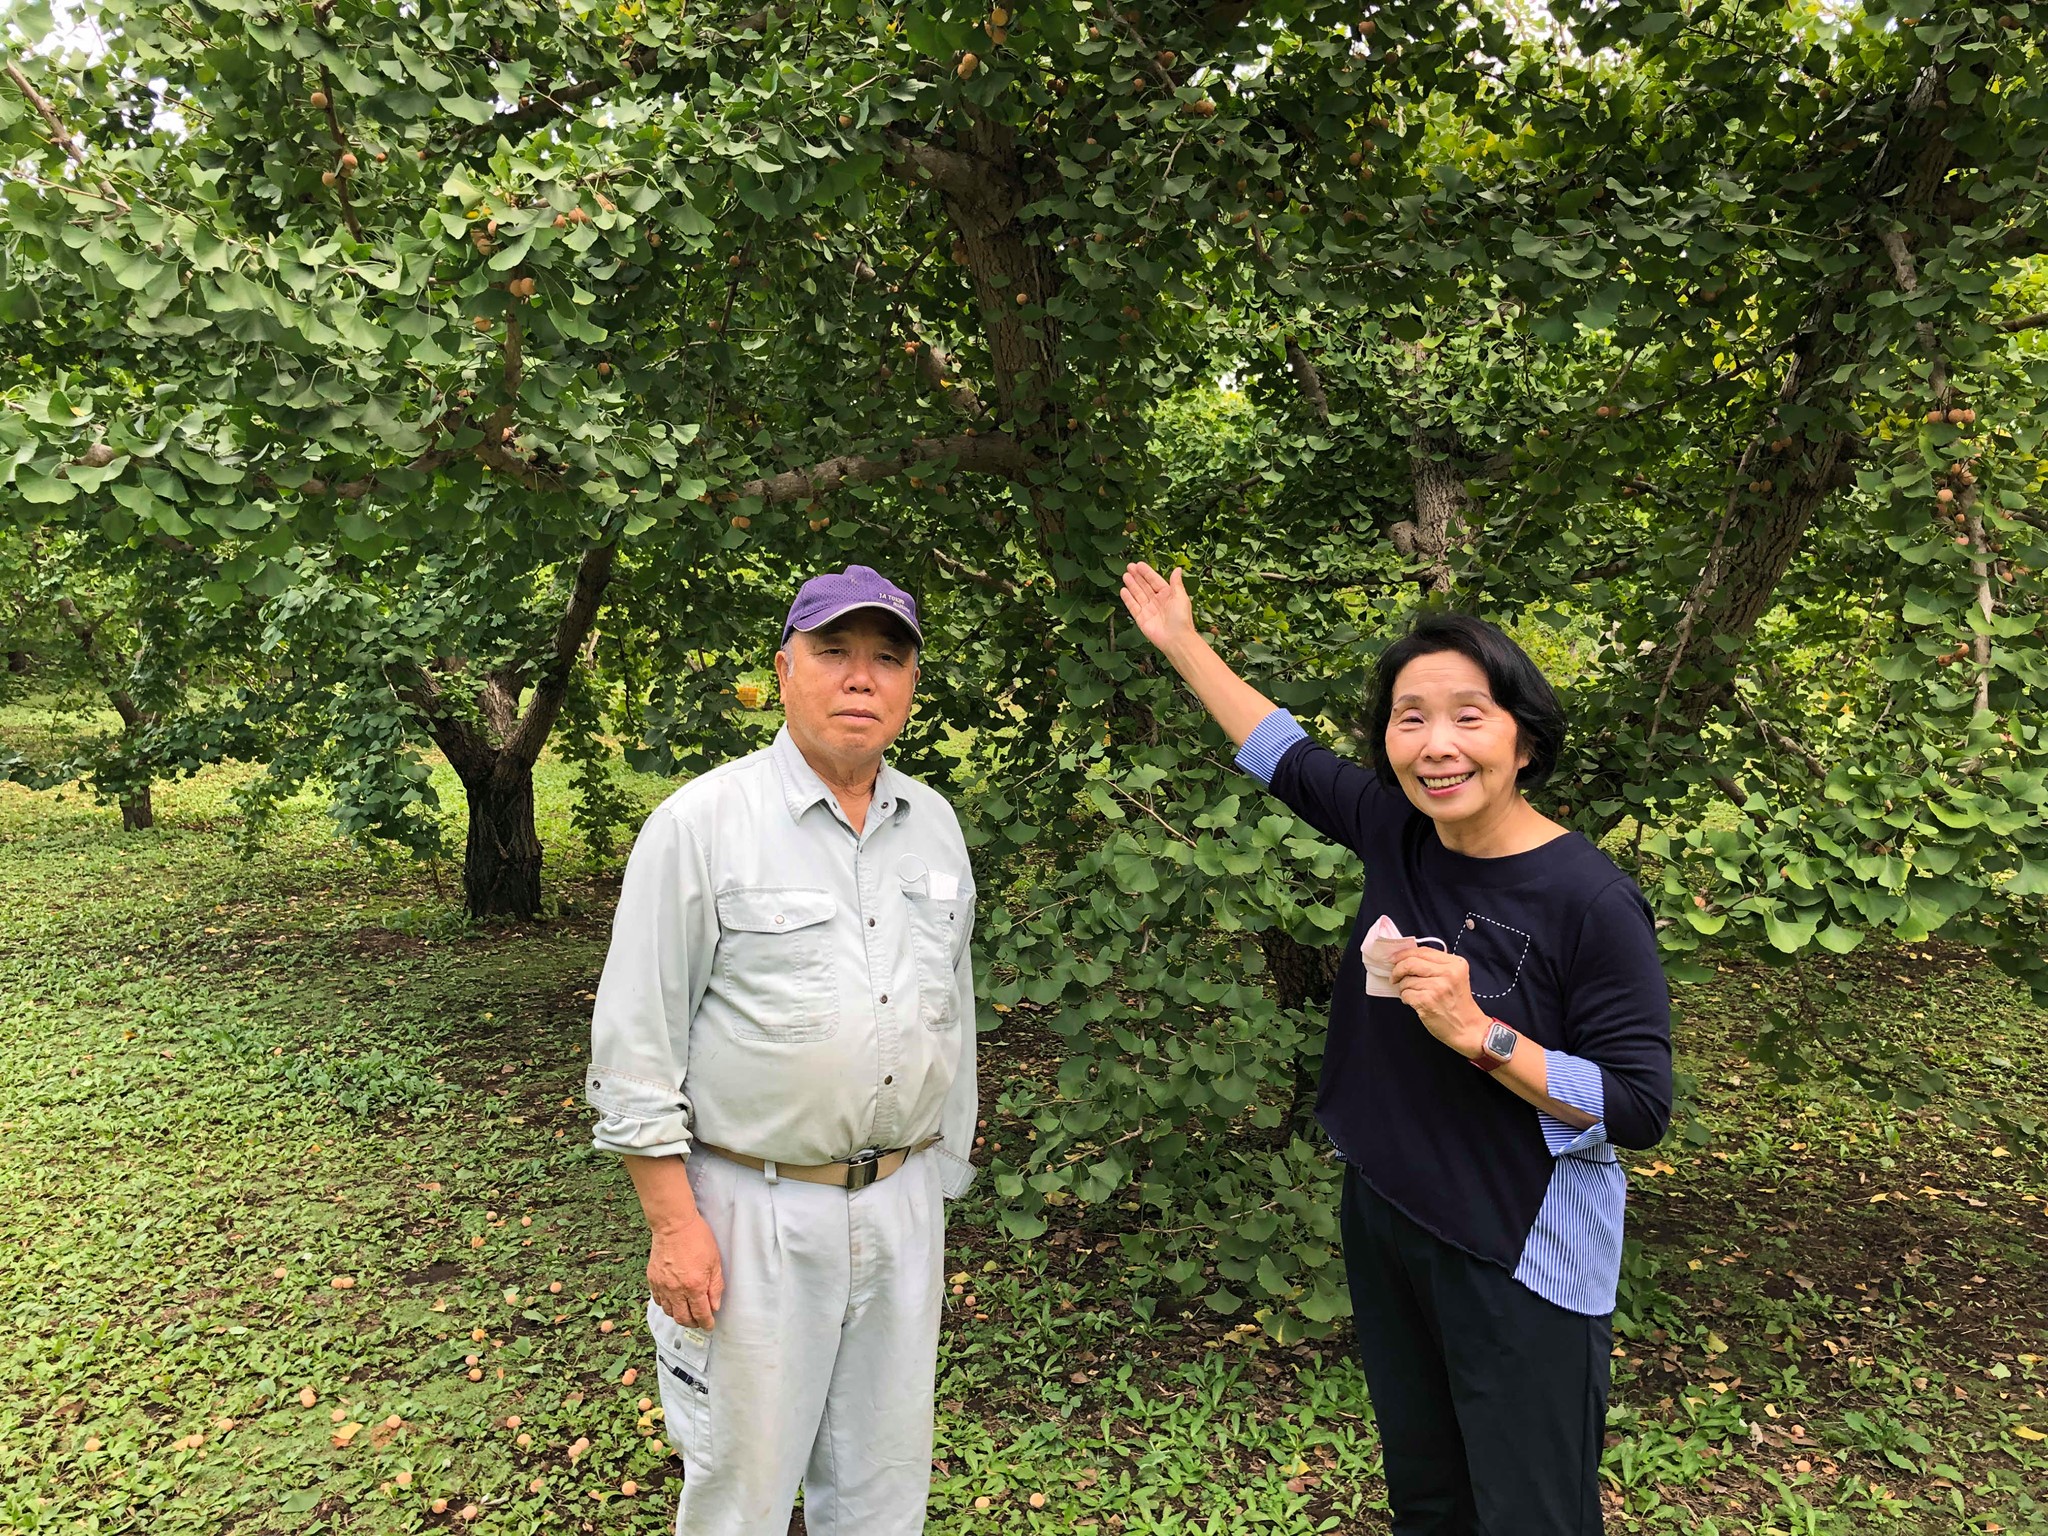 三鷹市井口で、都内最大規模のギンナン農家を営んでいる「山本果樹園」を訪ねました。